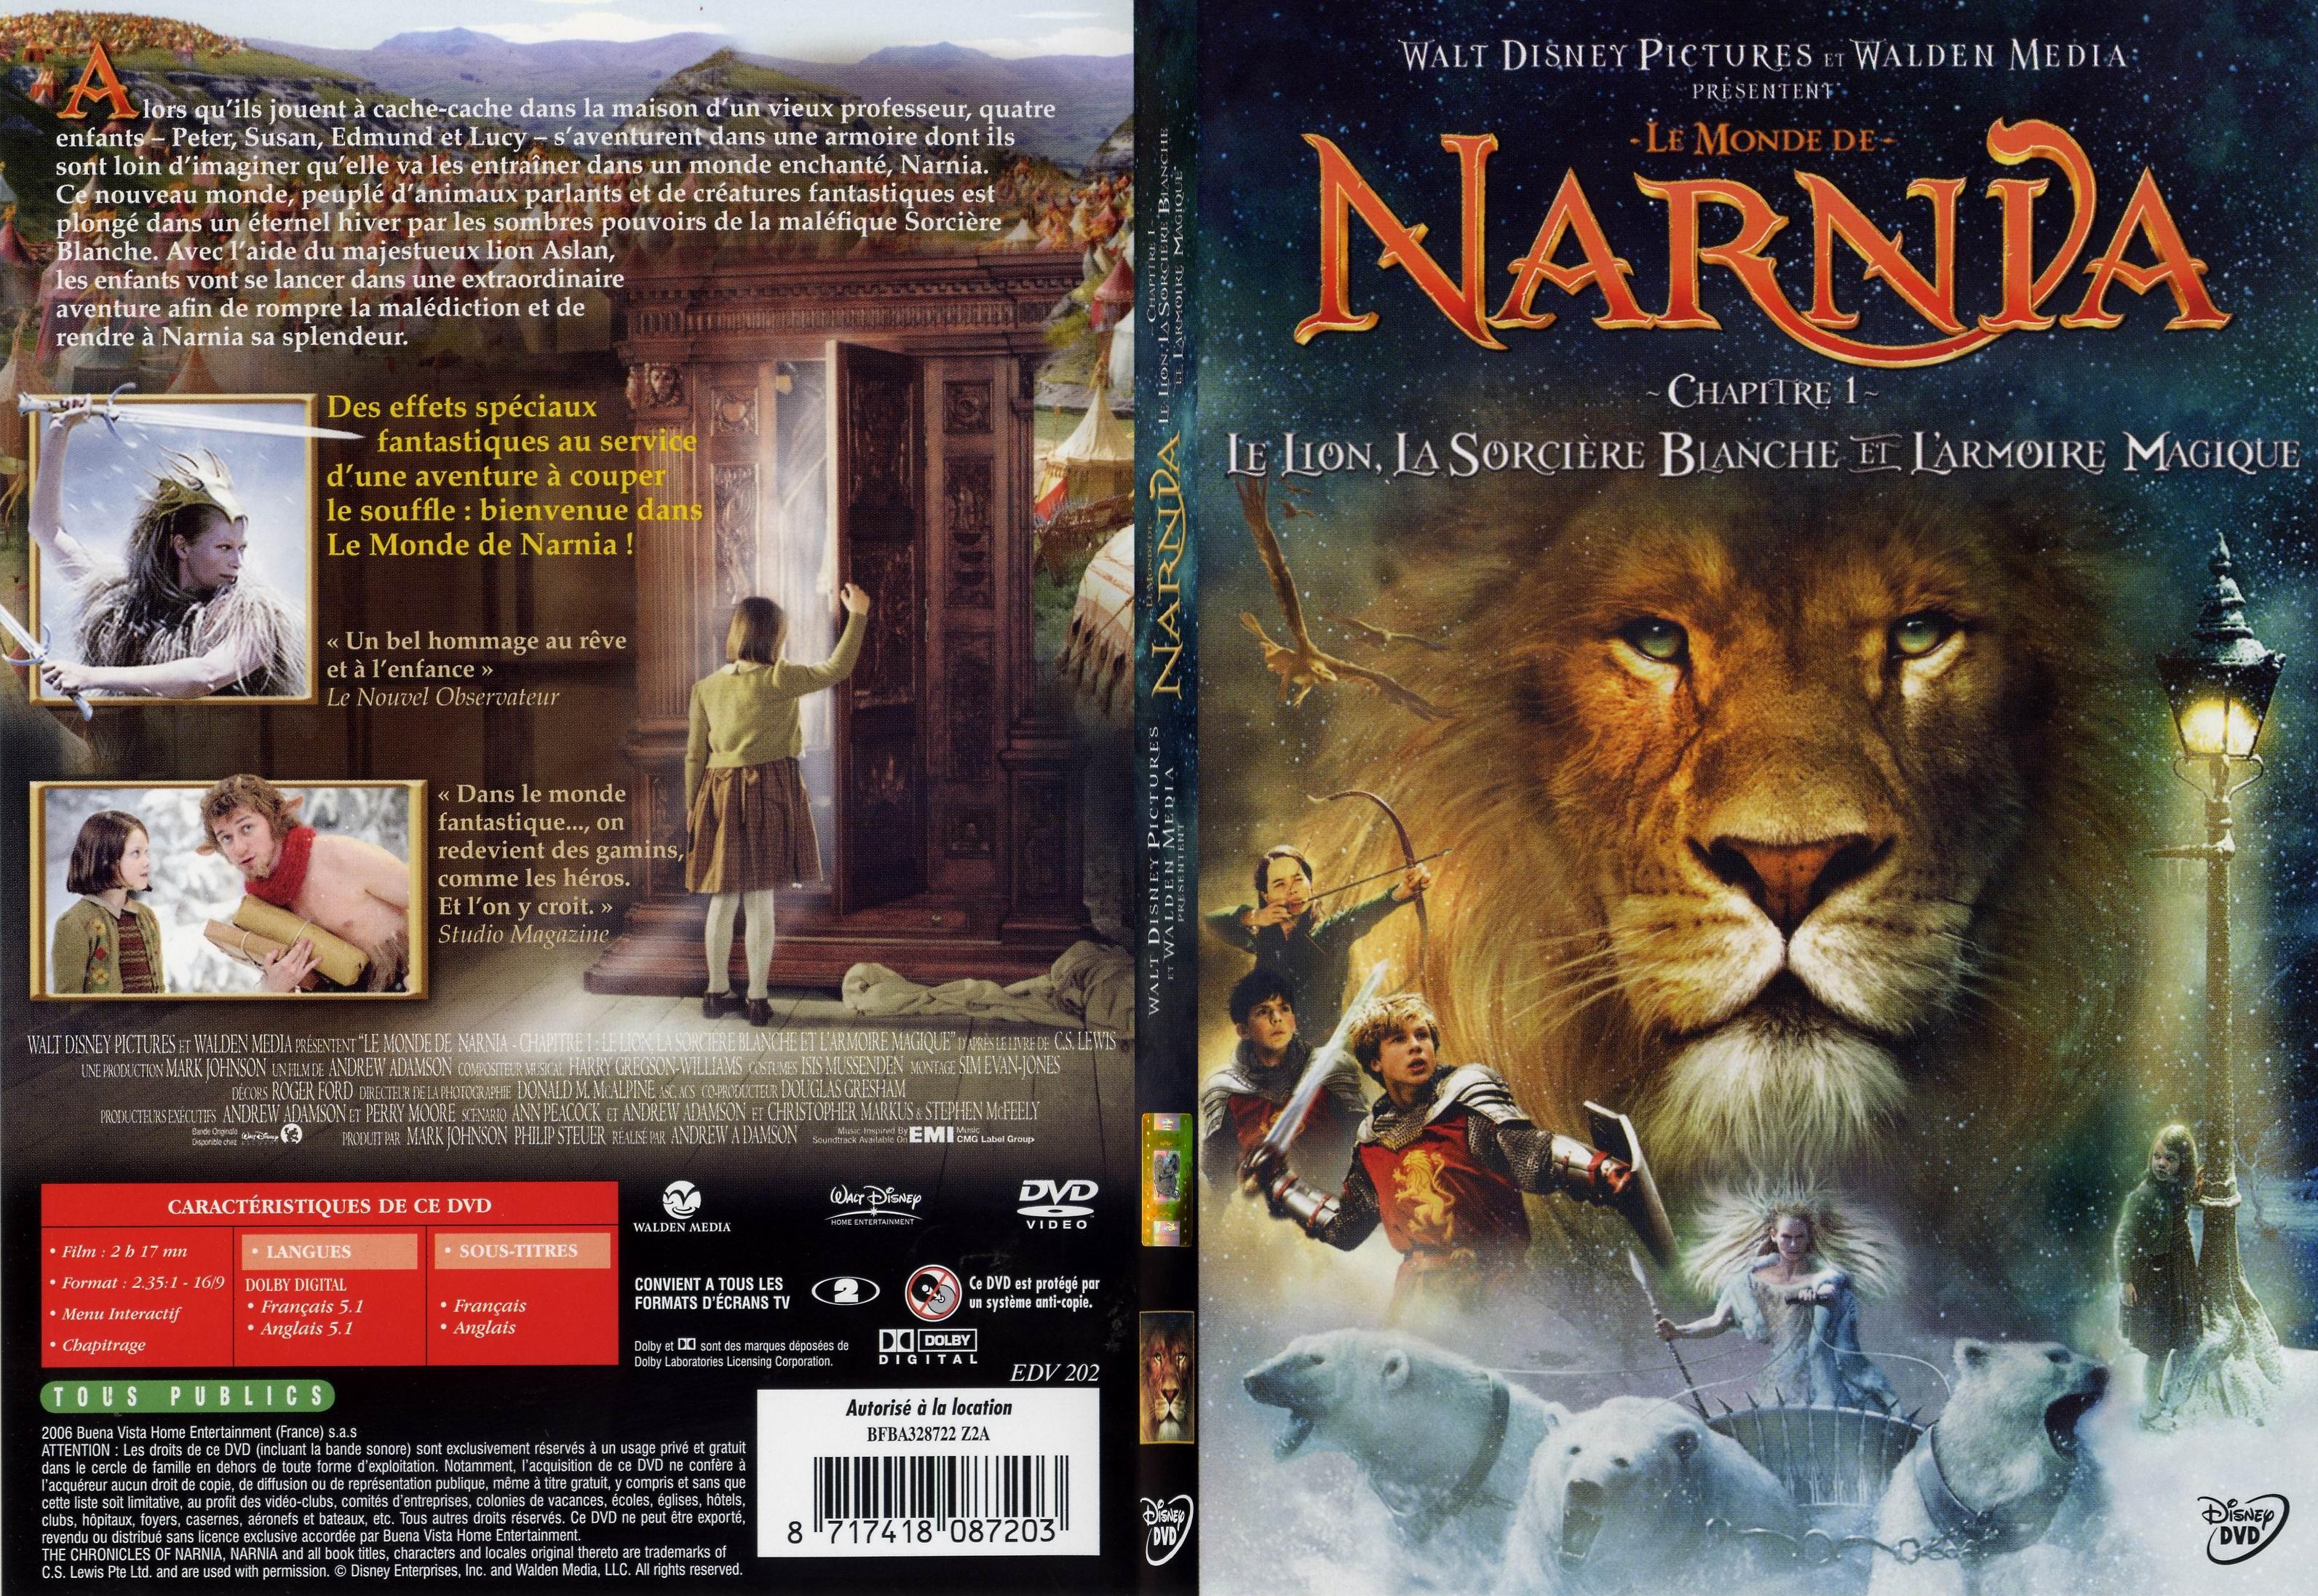 Jaquette DVD de Le monde de narnia chapitre 1 - SLIM - Cin��ma Passion